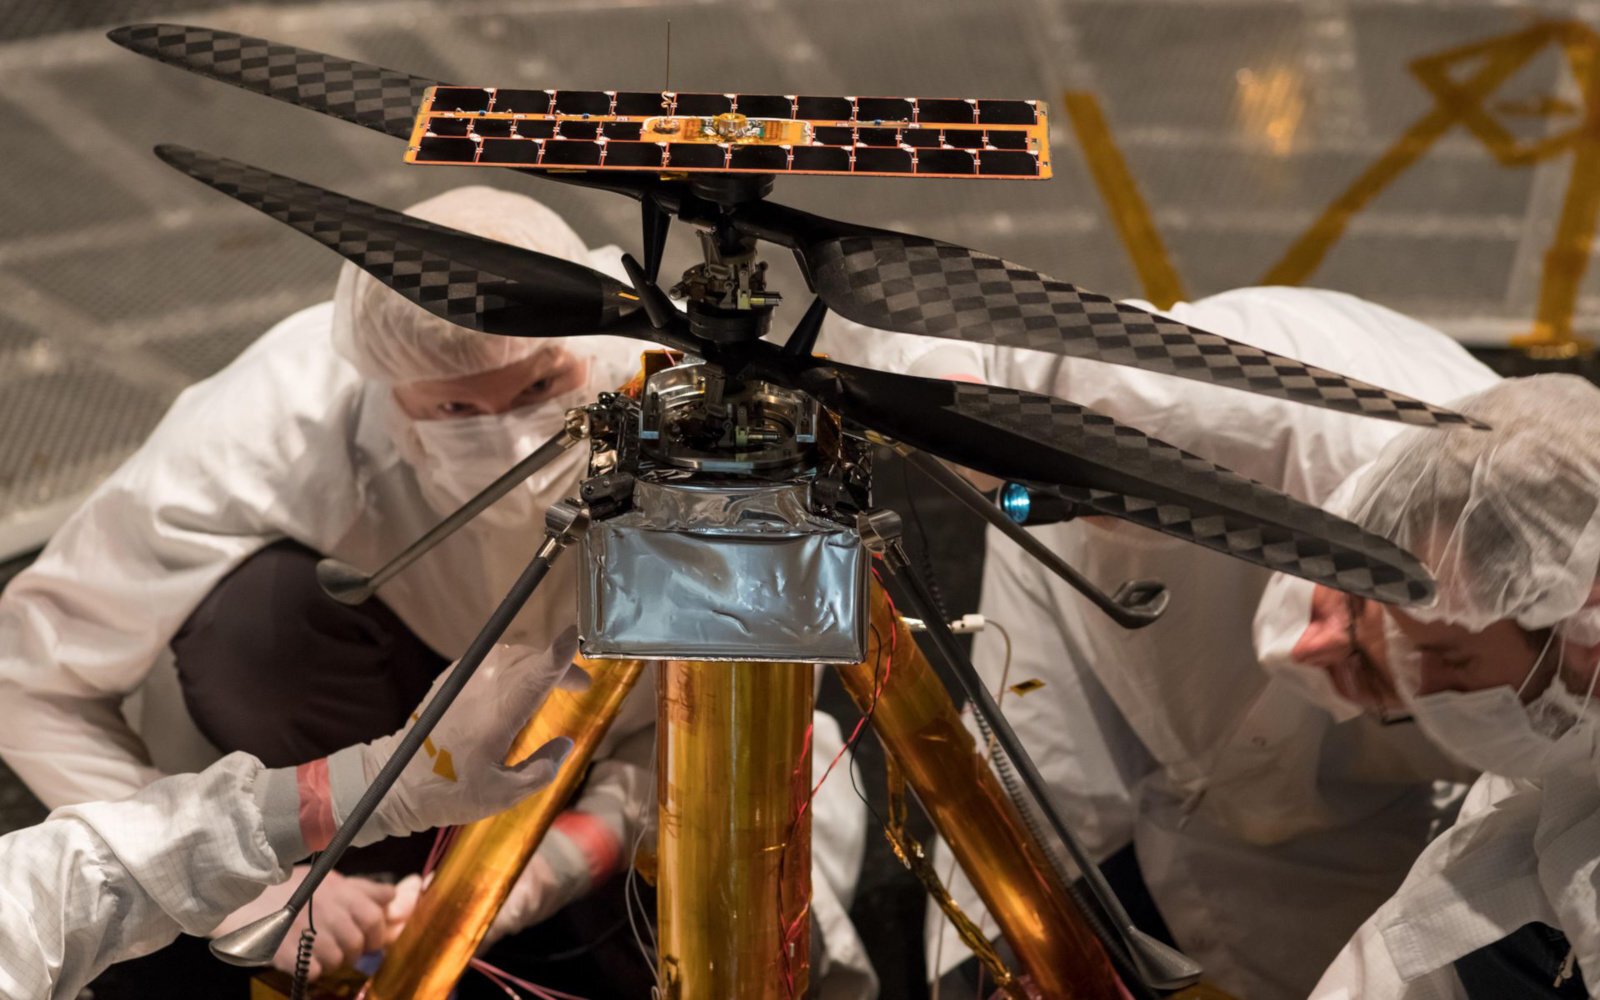 Η NASA ολοκλήρωσε με επιτυχία τις δοκιμές για το Mars Helicopter που θα πετάξει στον πλανήτη Άρη